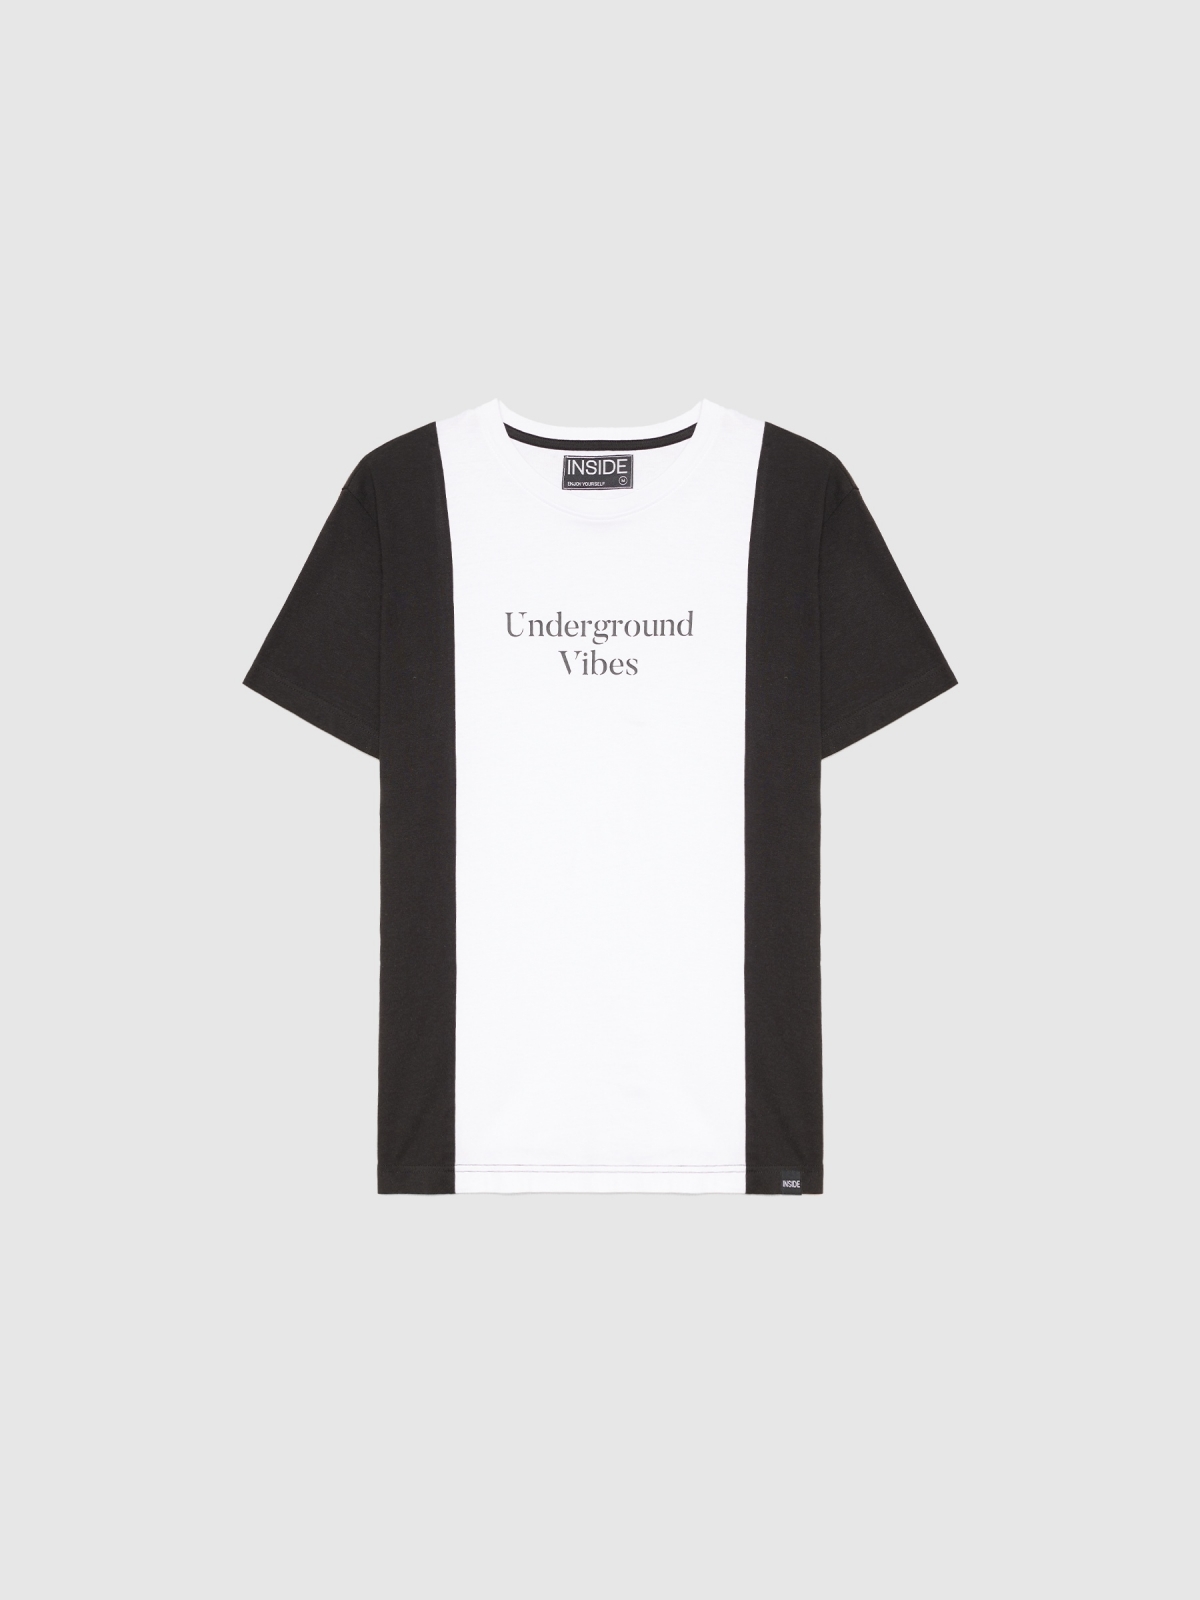  T-shirt minimalista com blocos de cores preto